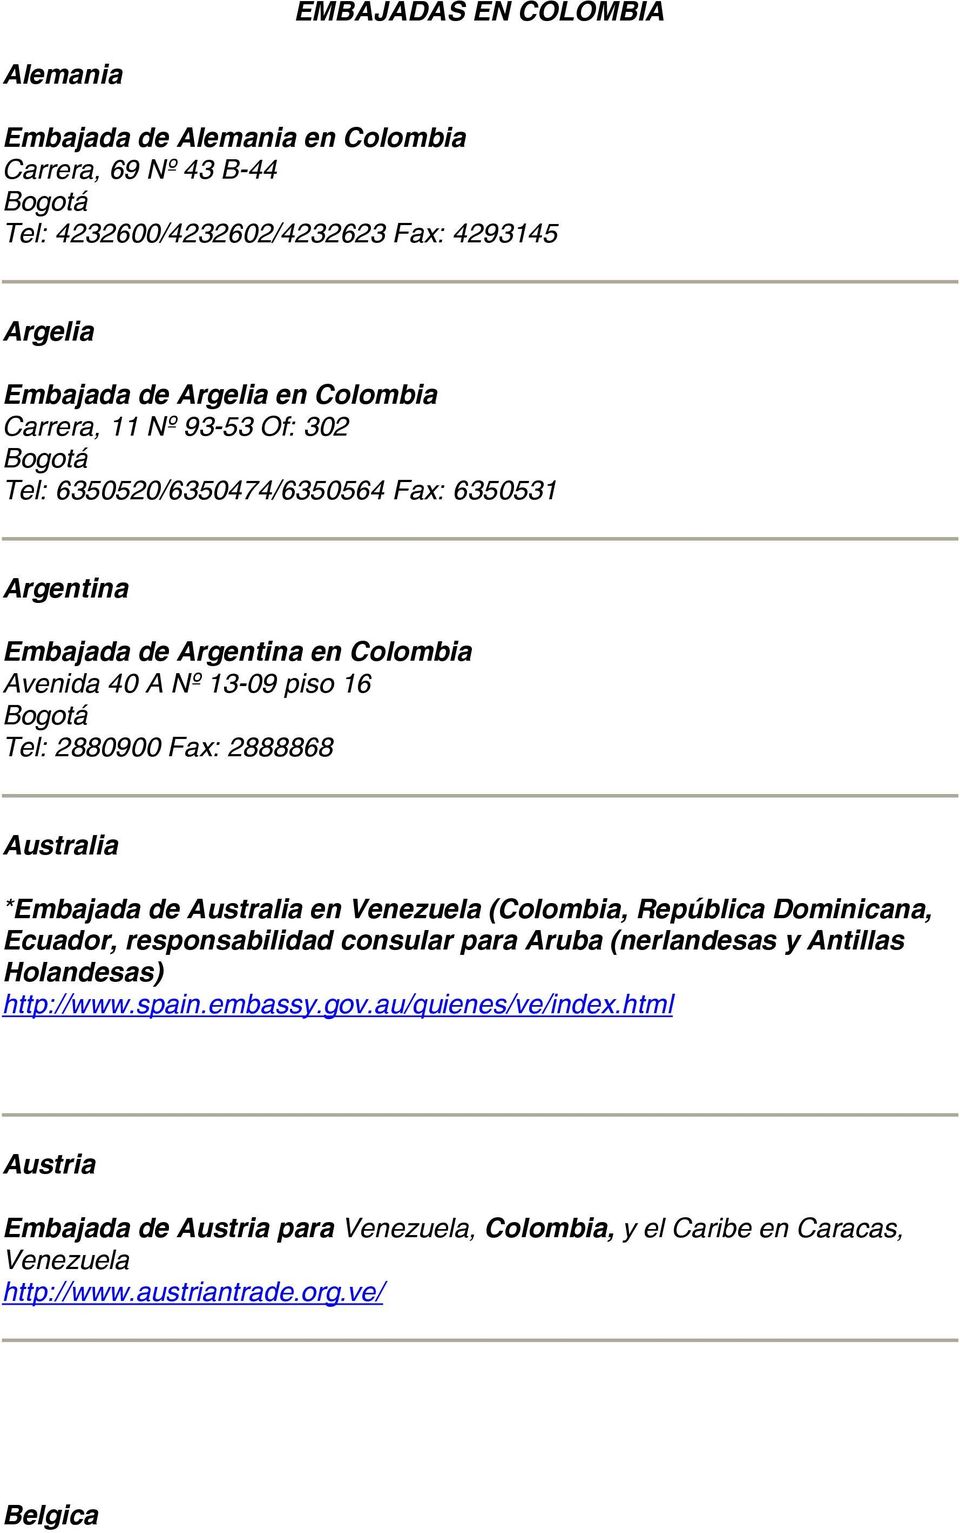 Australia *Embajada de Australia en Venezuela (Colombia, República Dominicana, Ecuador, responsabilidad consular para Aruba (nerlandesas y Antillas Holandesas) http://www.